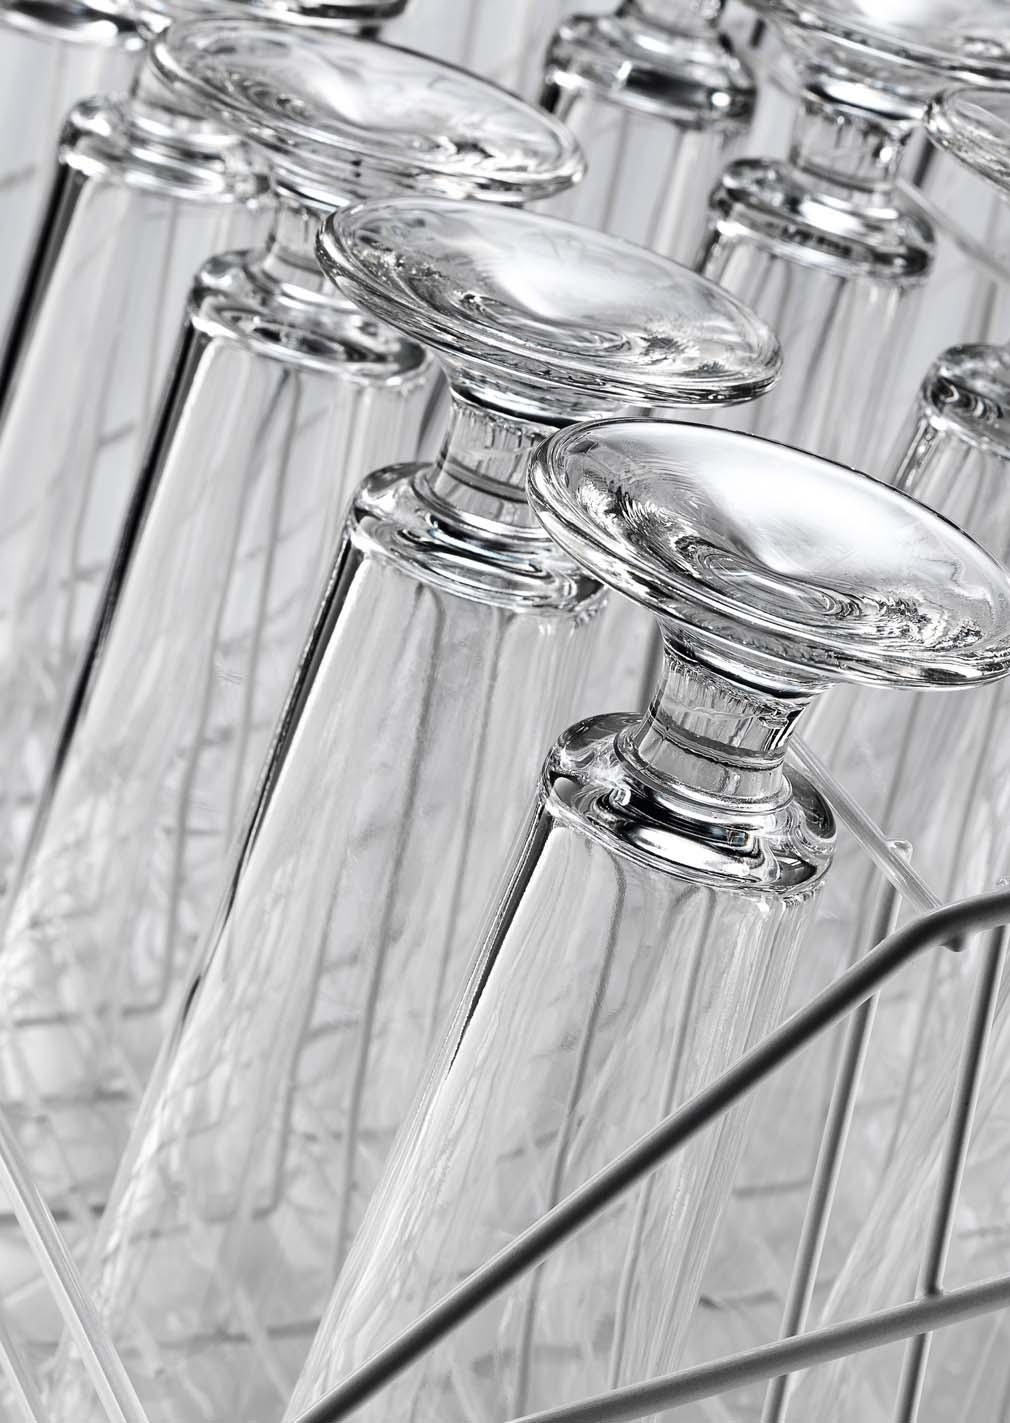 Unsere Lösung: Gläserkörbe mit Schrägstellung Nicht bei schrägem Stand! Durch die Schrägstellung der Gläser im Drahtgitter- oder Kunststoffkorb wird ein optimales Spül- und Trocknungsergebnis erzielt.